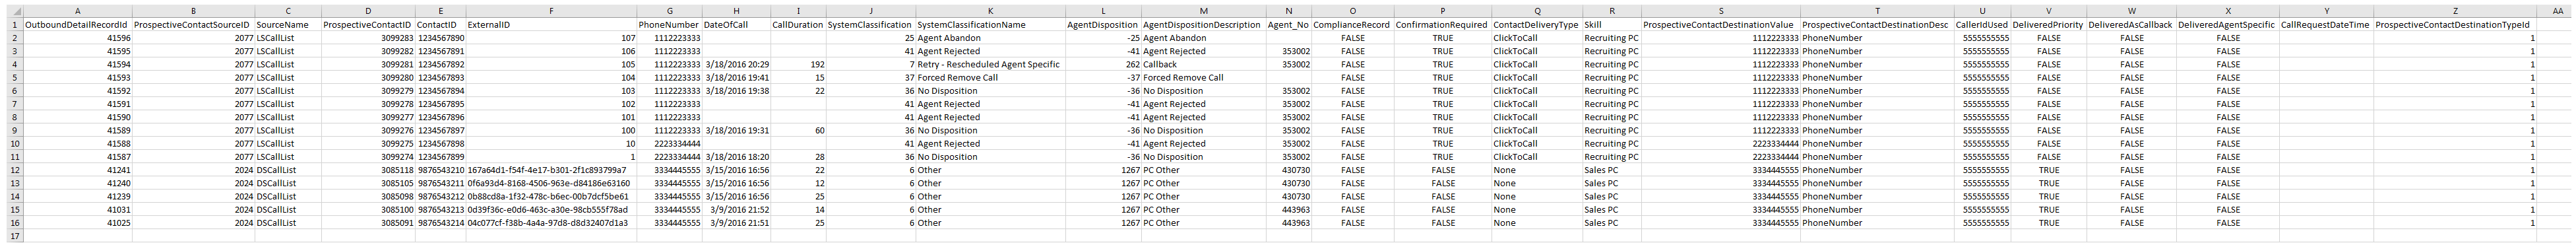 データダウンロードレポート出力の作成によるリストインベントリの例。